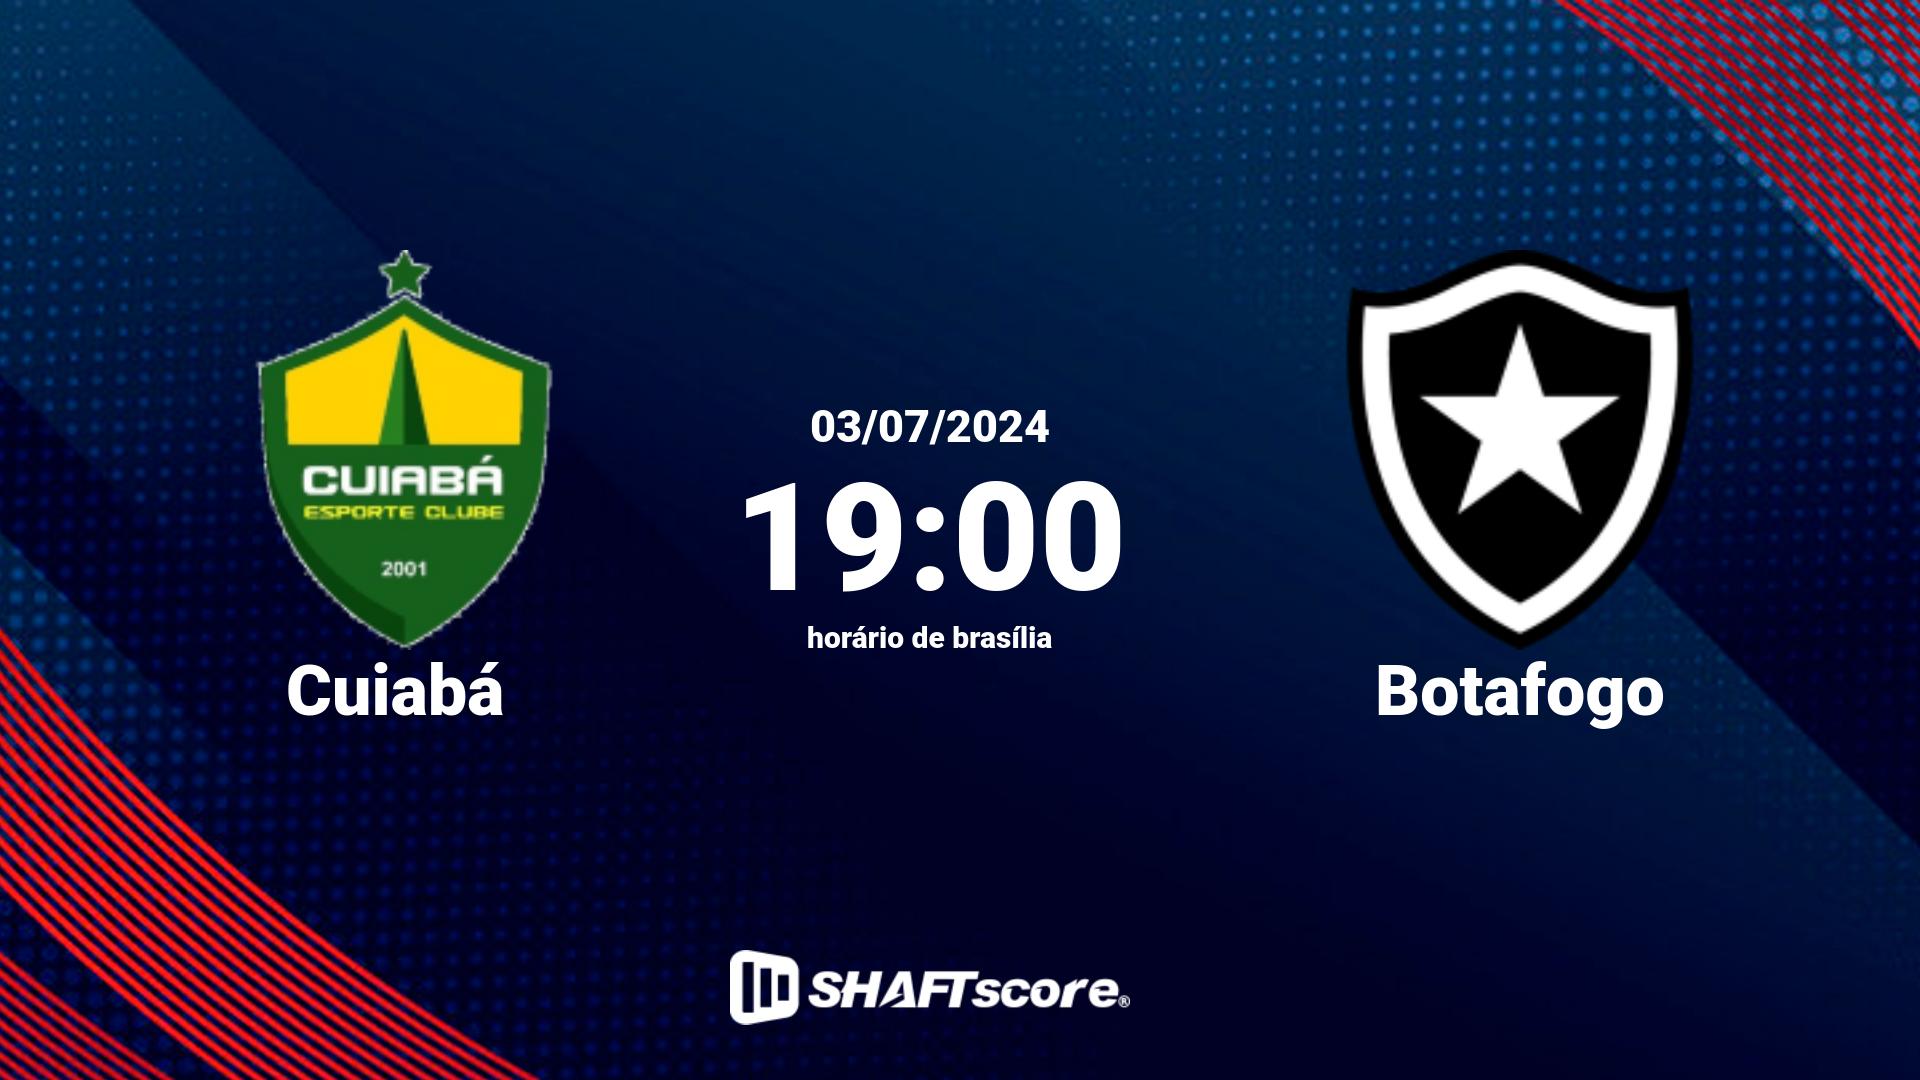 Estatísticas do jogo Cuiabá vs Botafogo 03.07 19:00